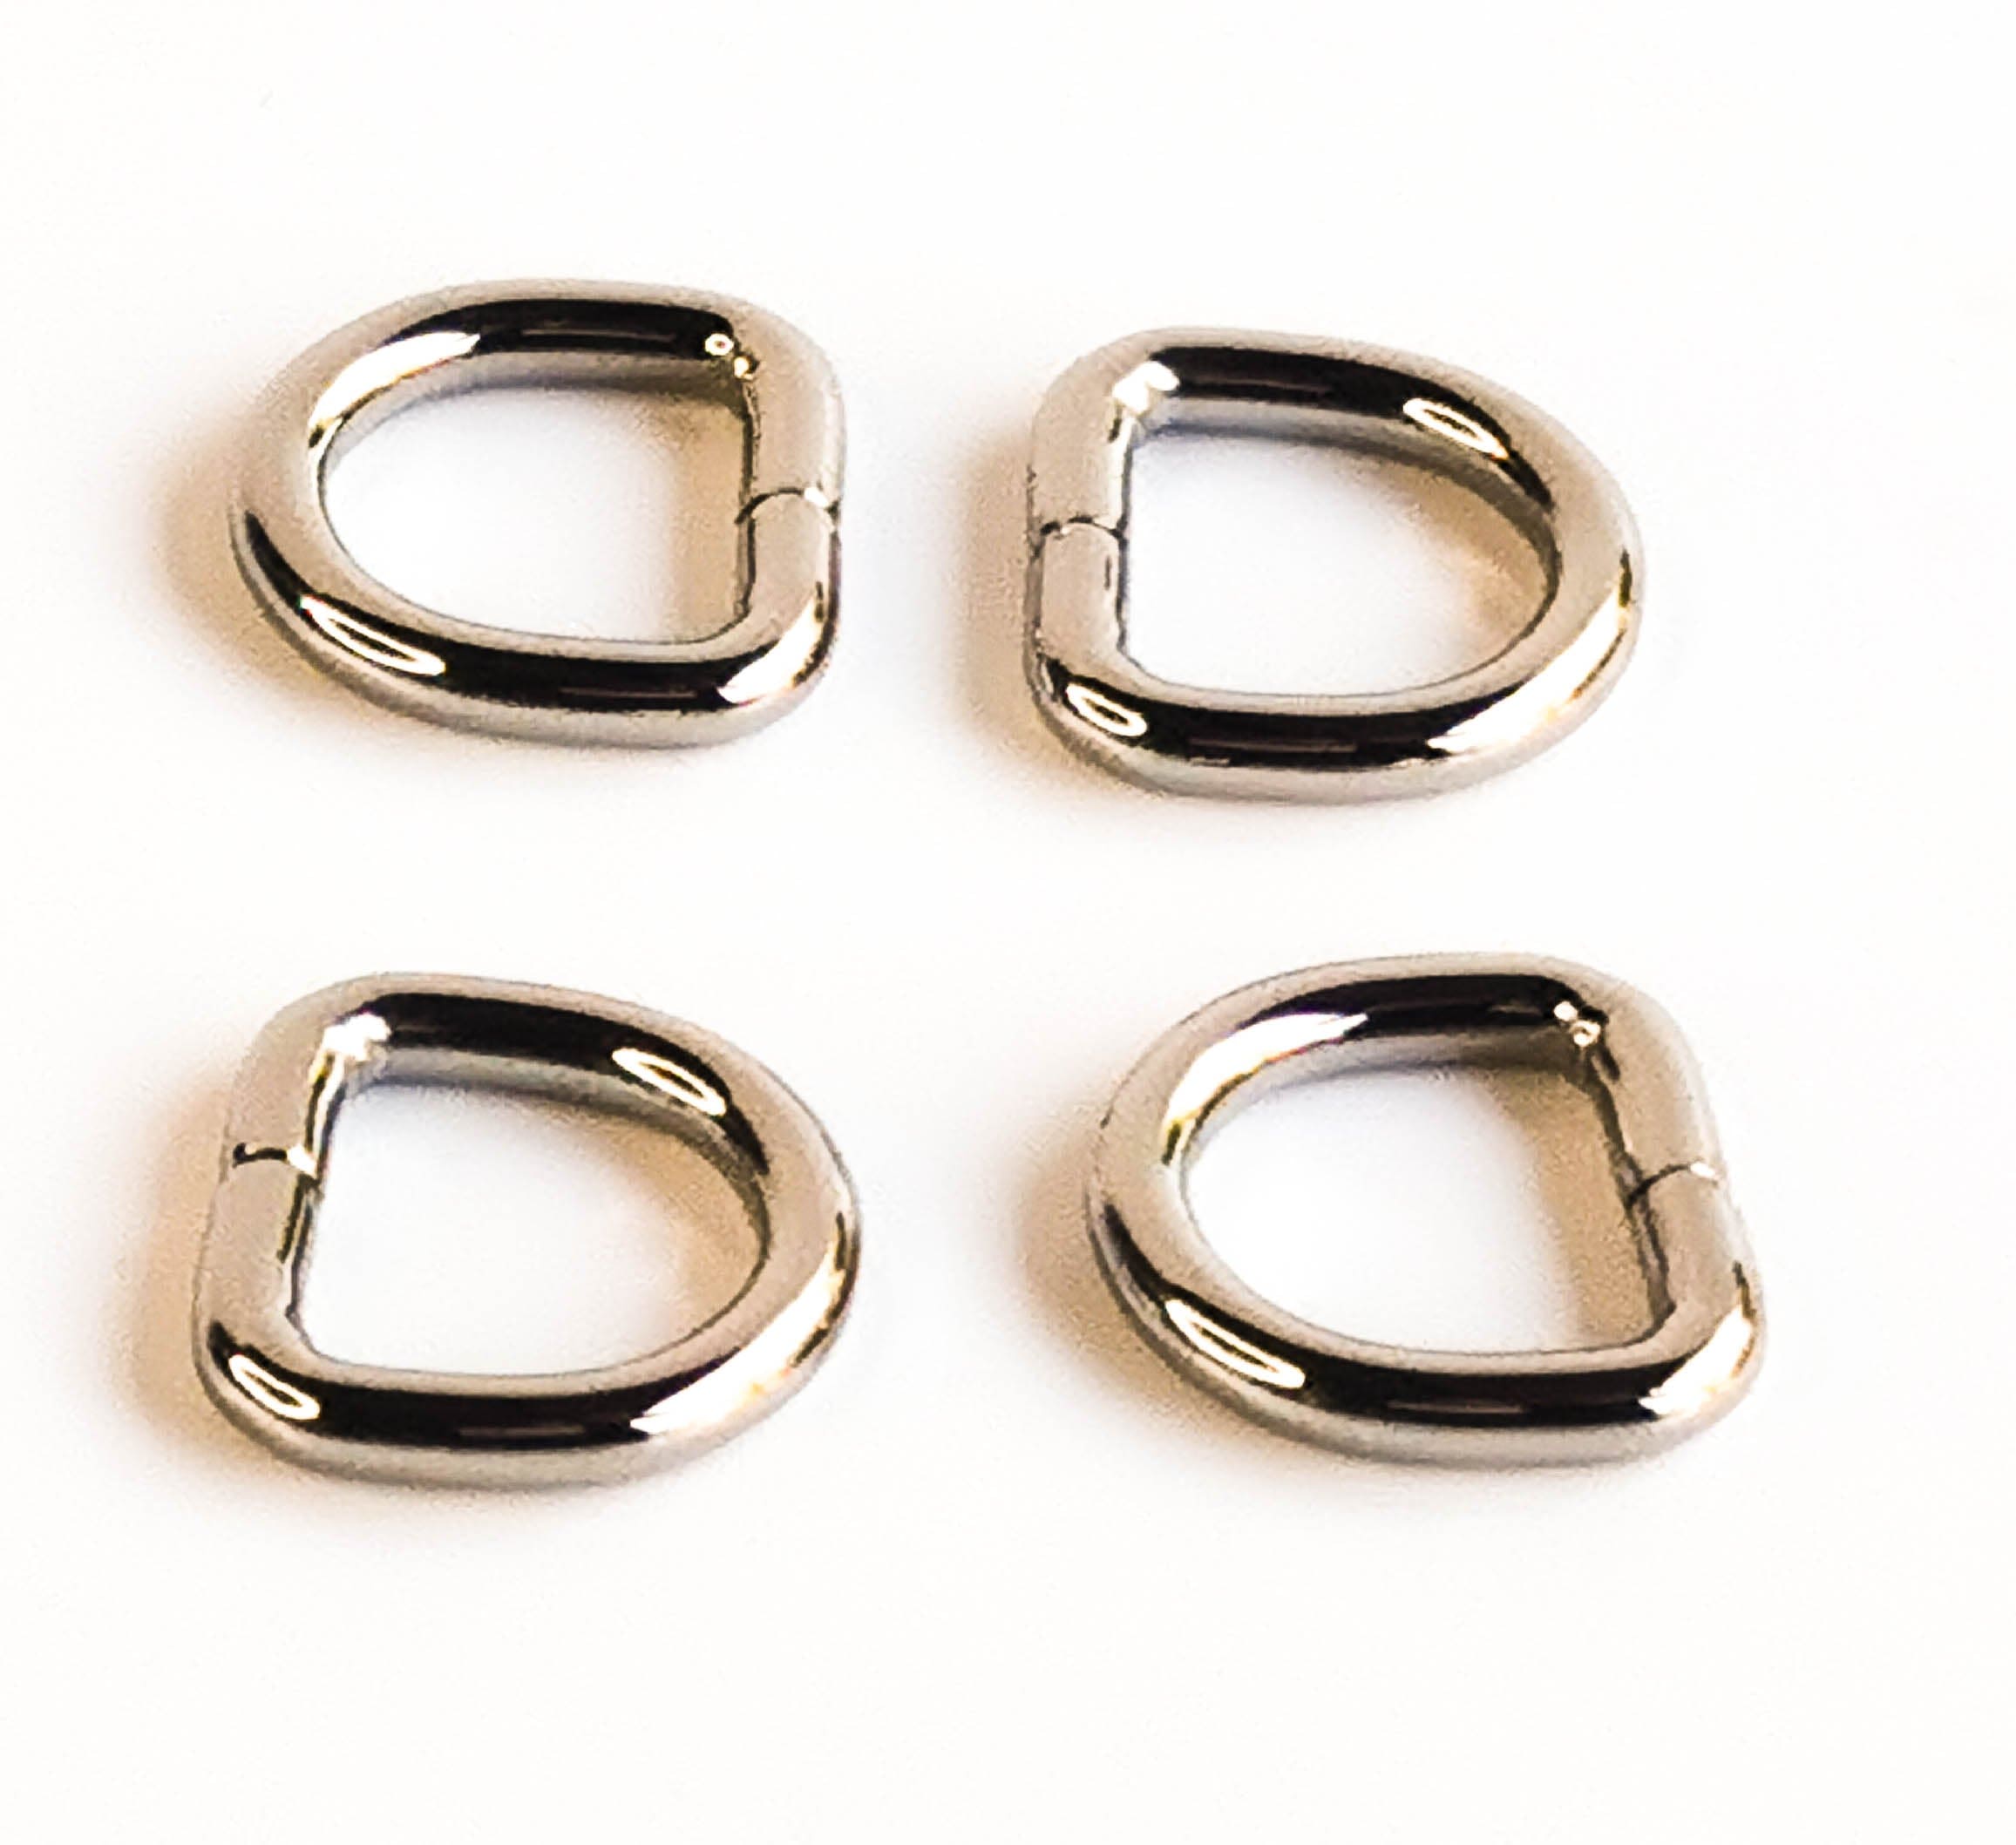 Kiwi Bagineers Ring 1/2" (13mm) / Nickel D rings for bags.. Pack of 4. Kiwi Bagineers